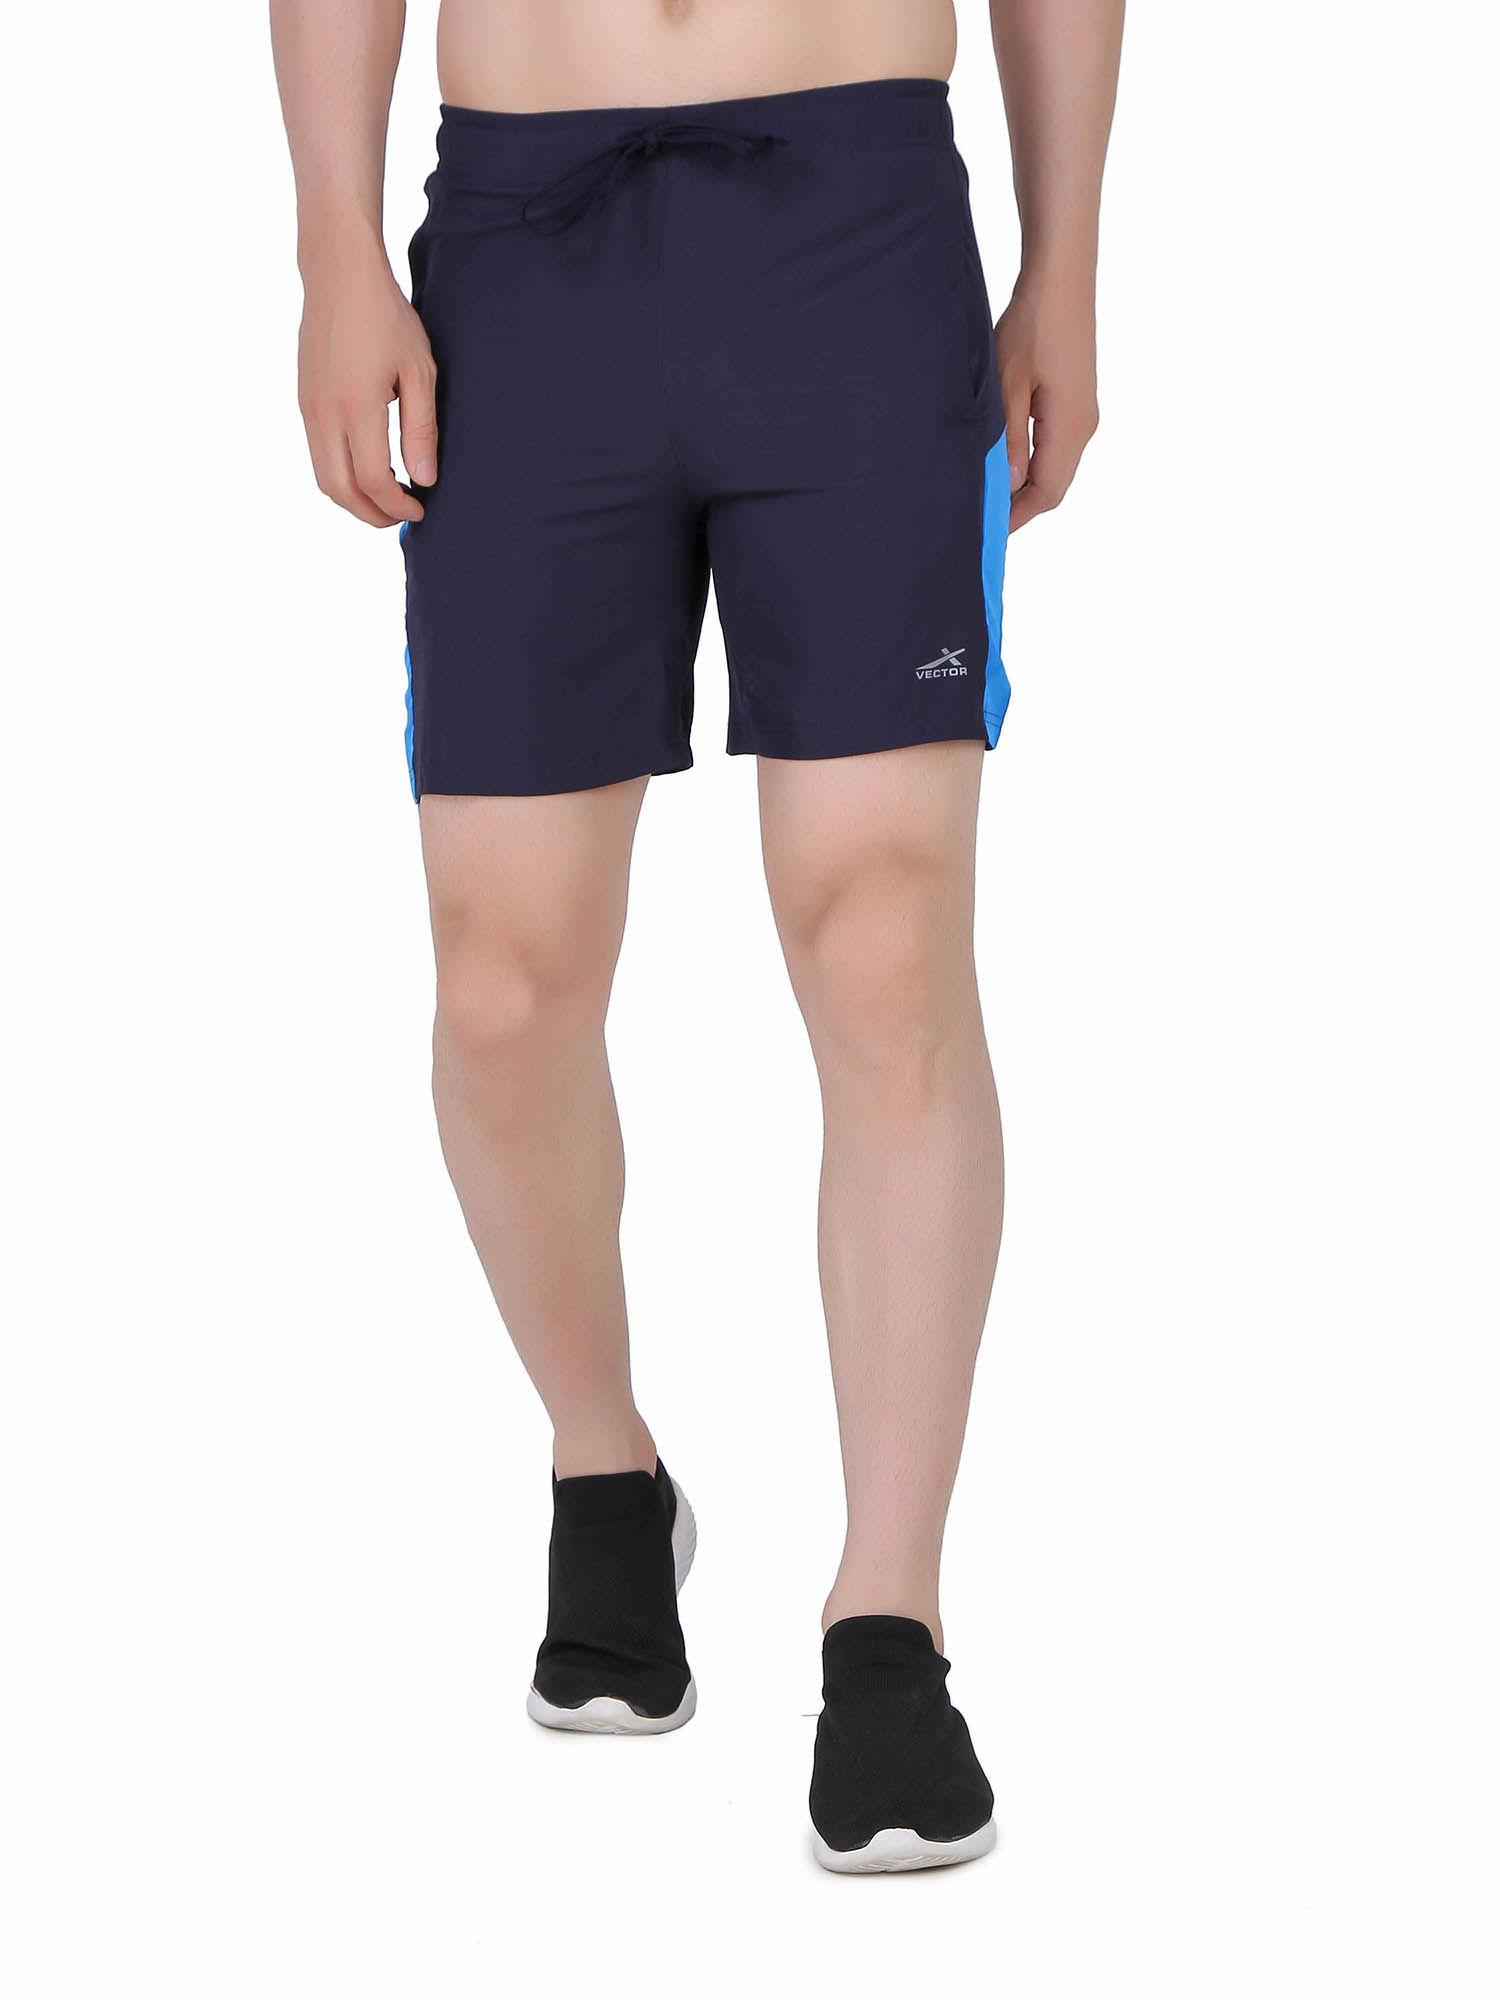 solid men running training shorts - navy blue